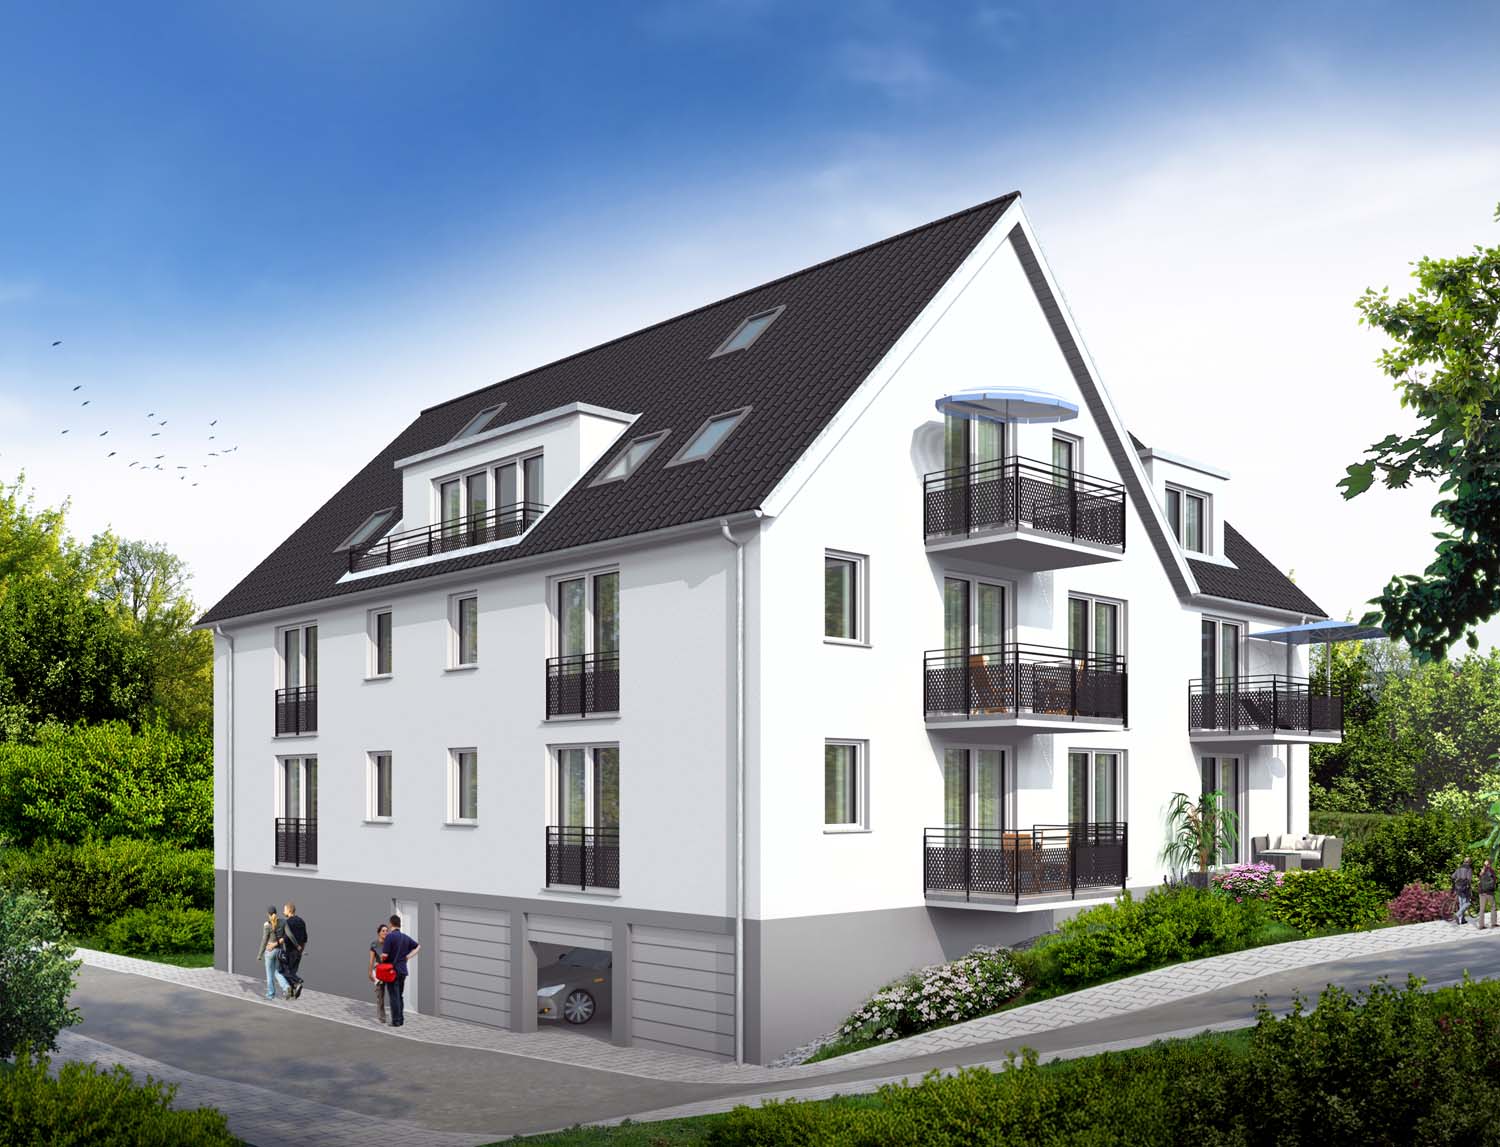 Mehrfamilienhaus Neubau, 3D Architektur Visualisierung, Innsbrucker Straße 5, 70329 Stuttgart-Uhlbach, für Bemmerer Wohnbau & Immobilien GmbH (Jahr 2018)